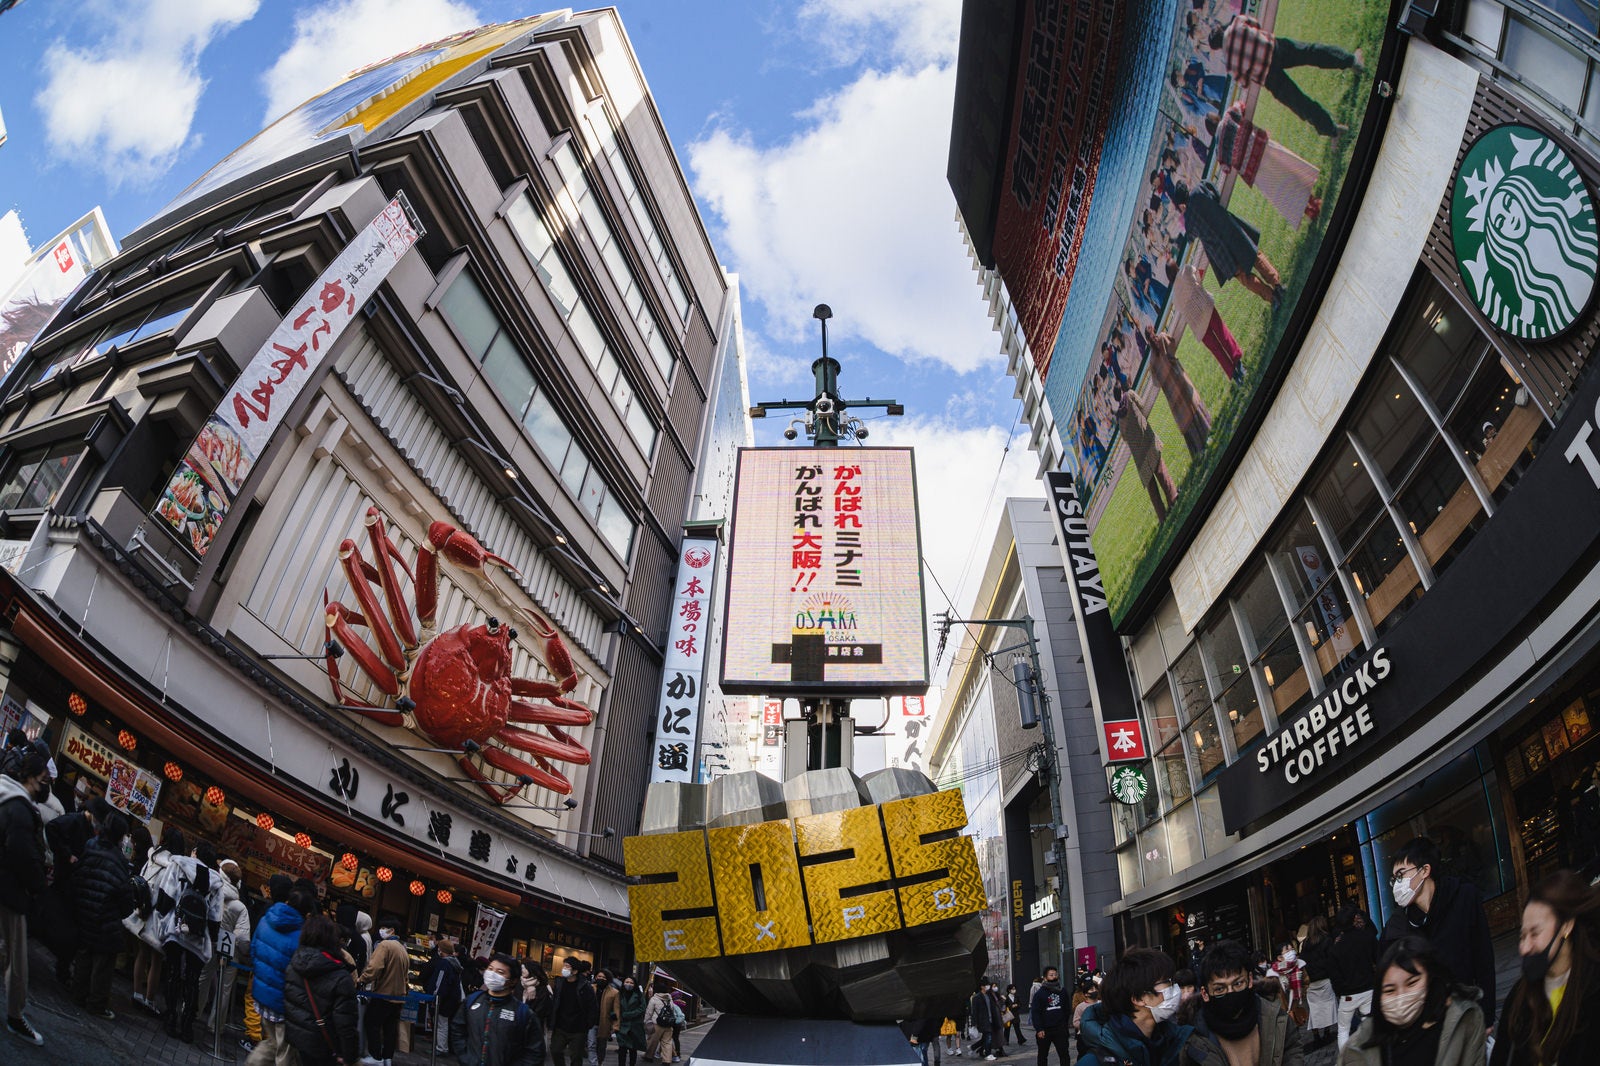 「戎橋筋商店街のがんばれ大阪の看板」の写真